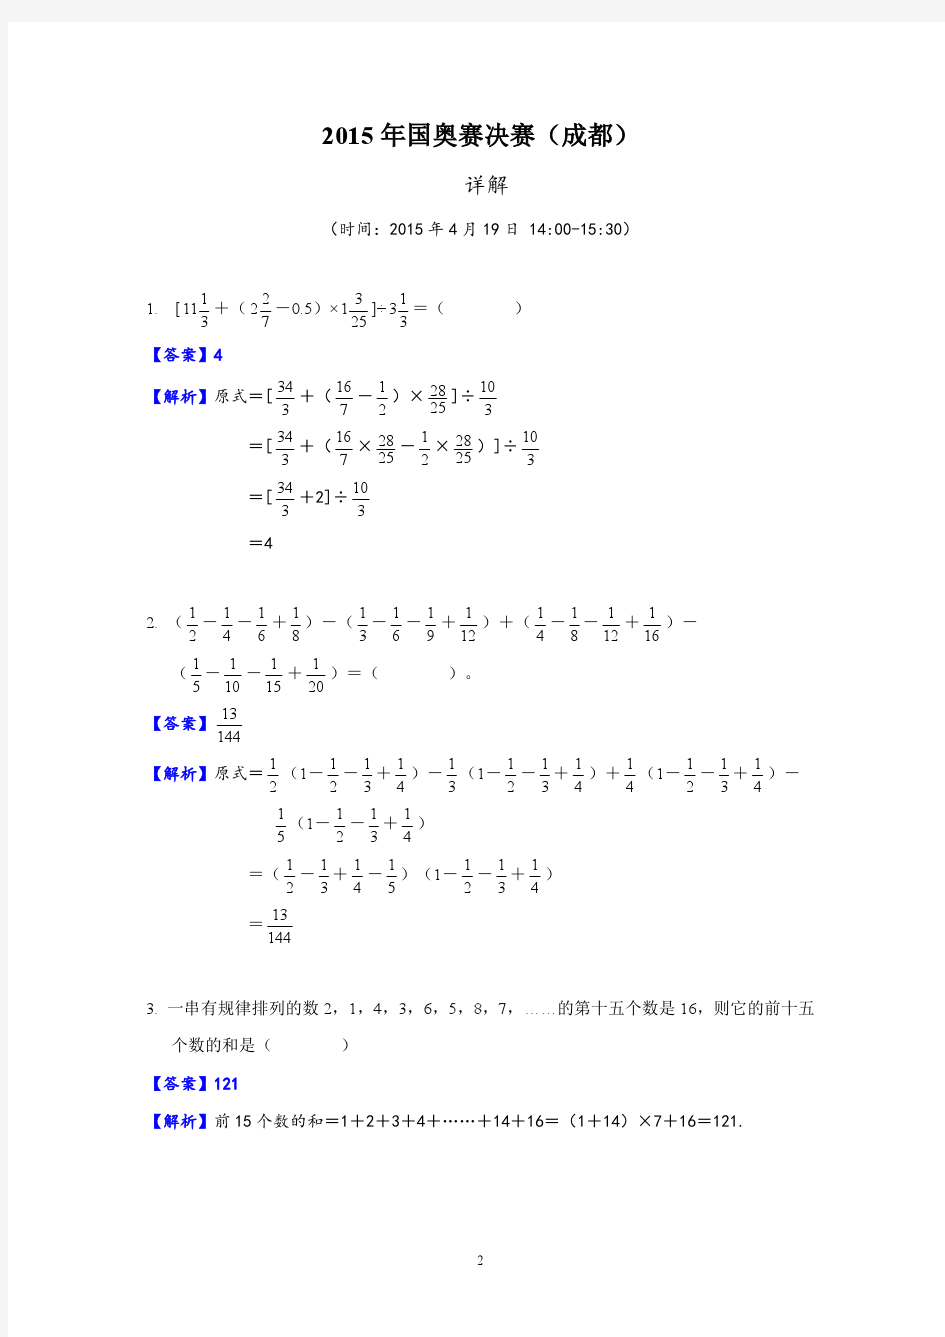 2015小学数学竞赛决赛试题答案和详解(成都国奥赛)